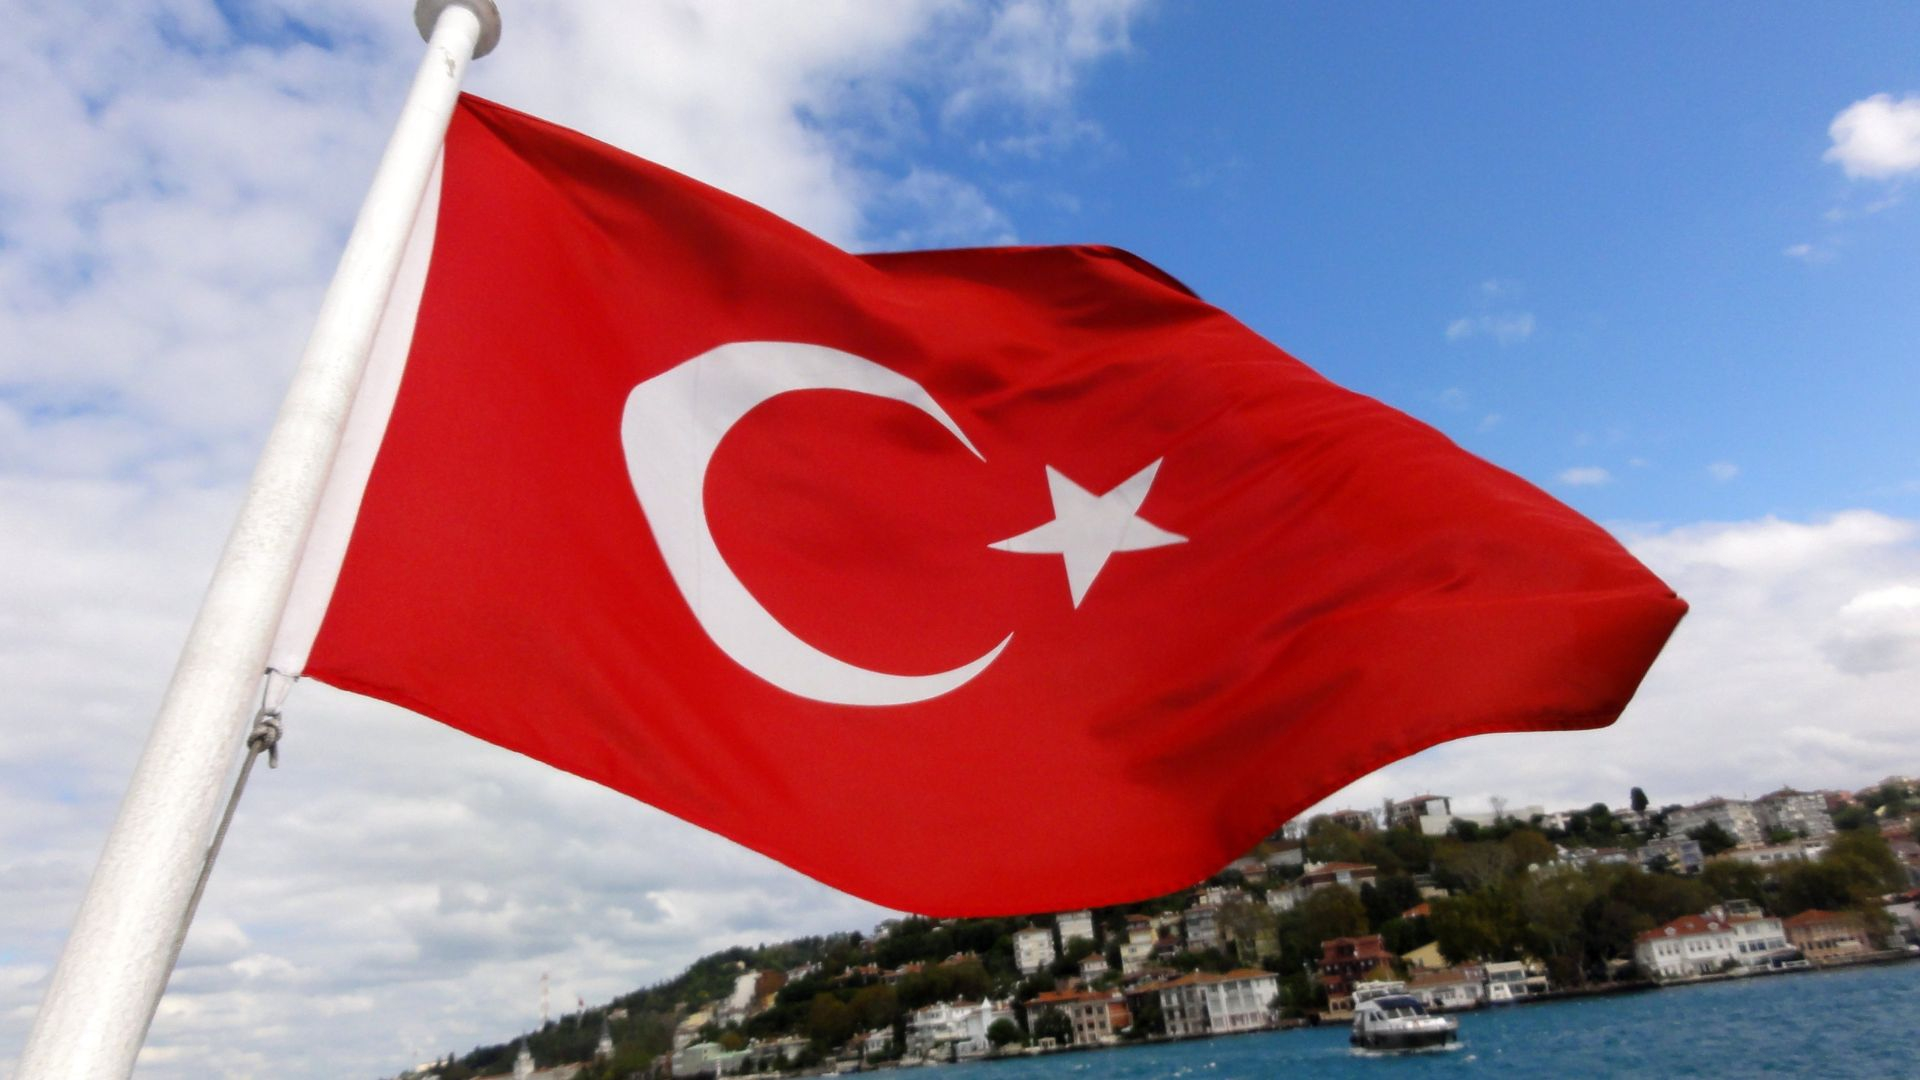 Цены, землетрясения и политика: эксперт пояснил, почему россияне не хотят отдыхать в Турции